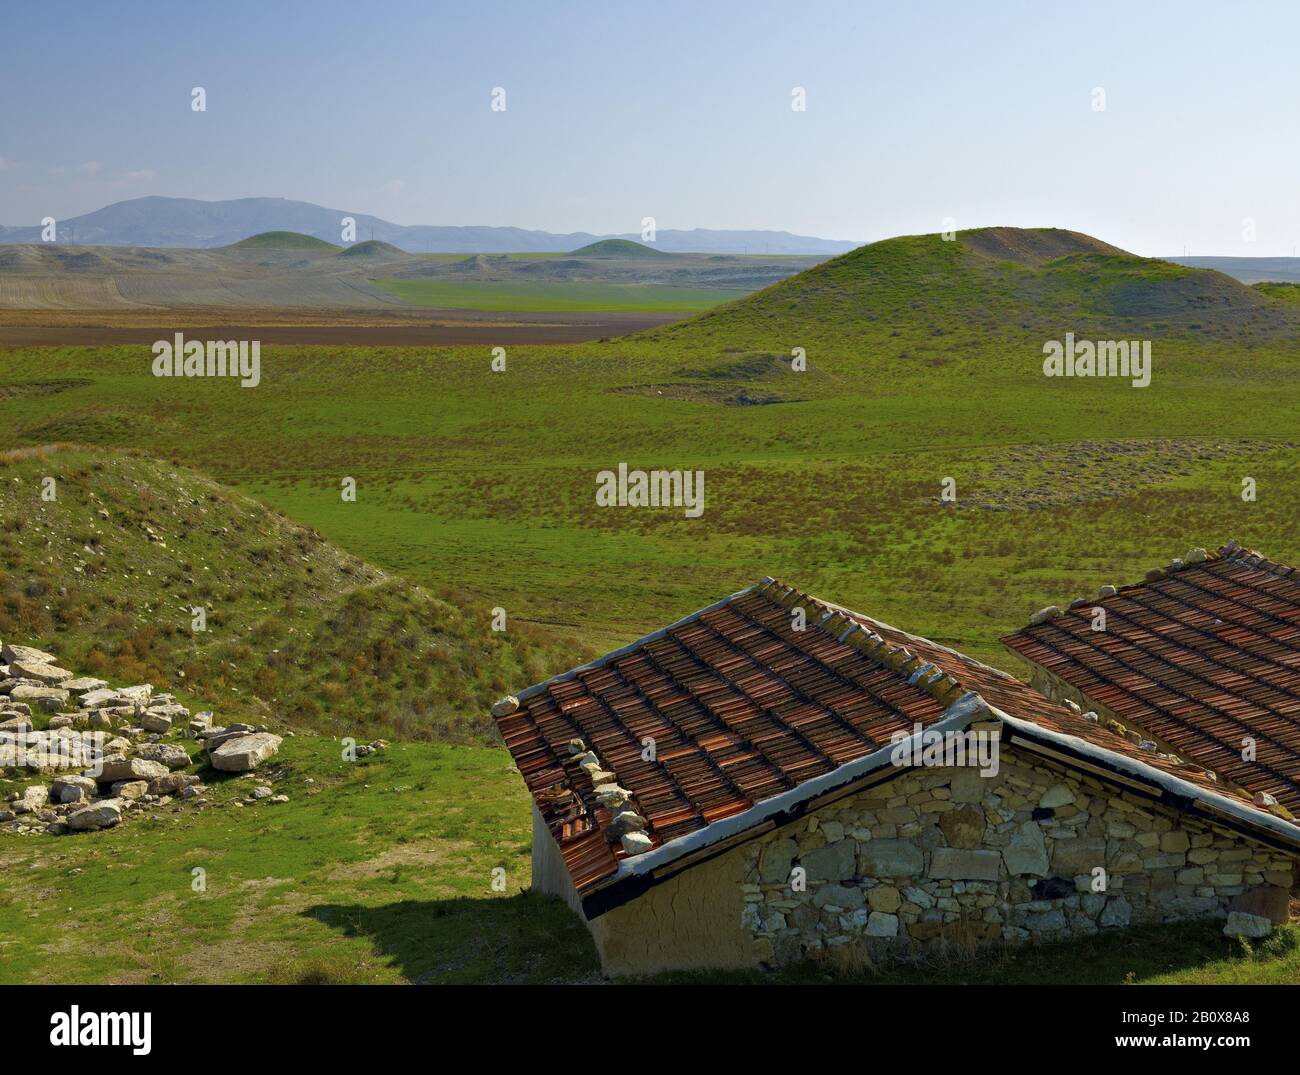 Landscape at Gordion, Polatli, Ankara Province, Central Anatolia, Turkey, Stock Photo